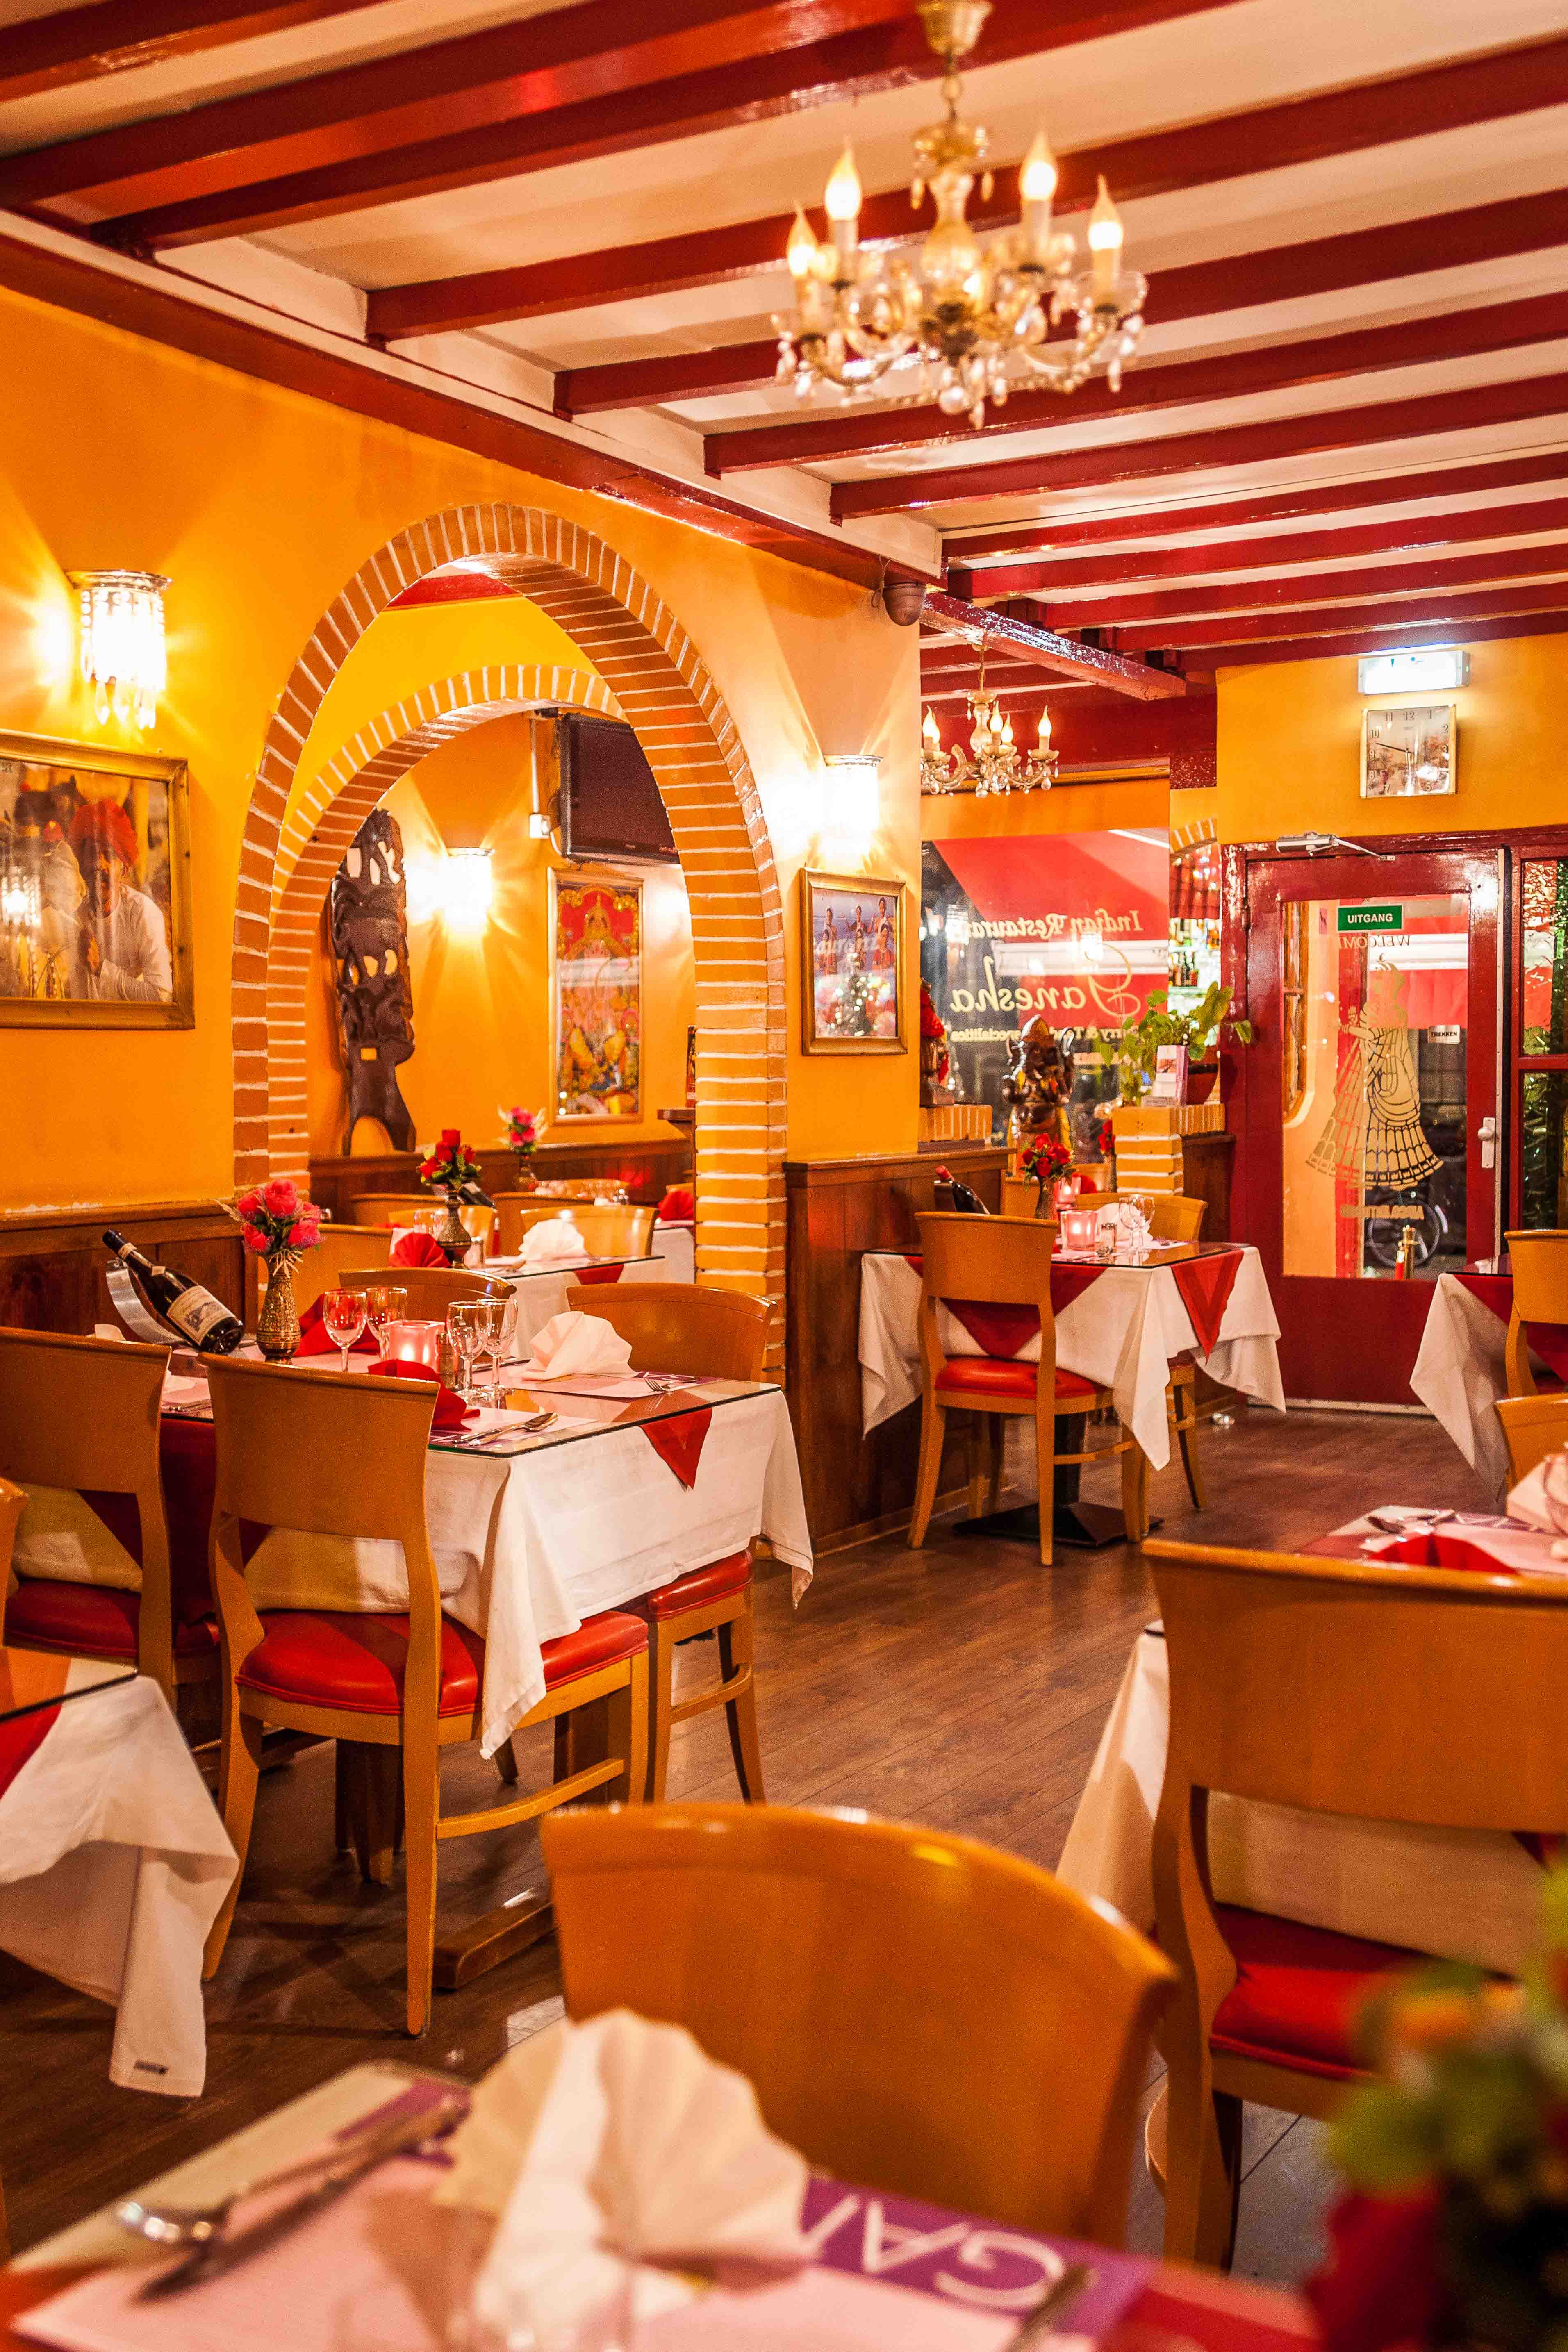 Best Indian Restaurant Amsterdam